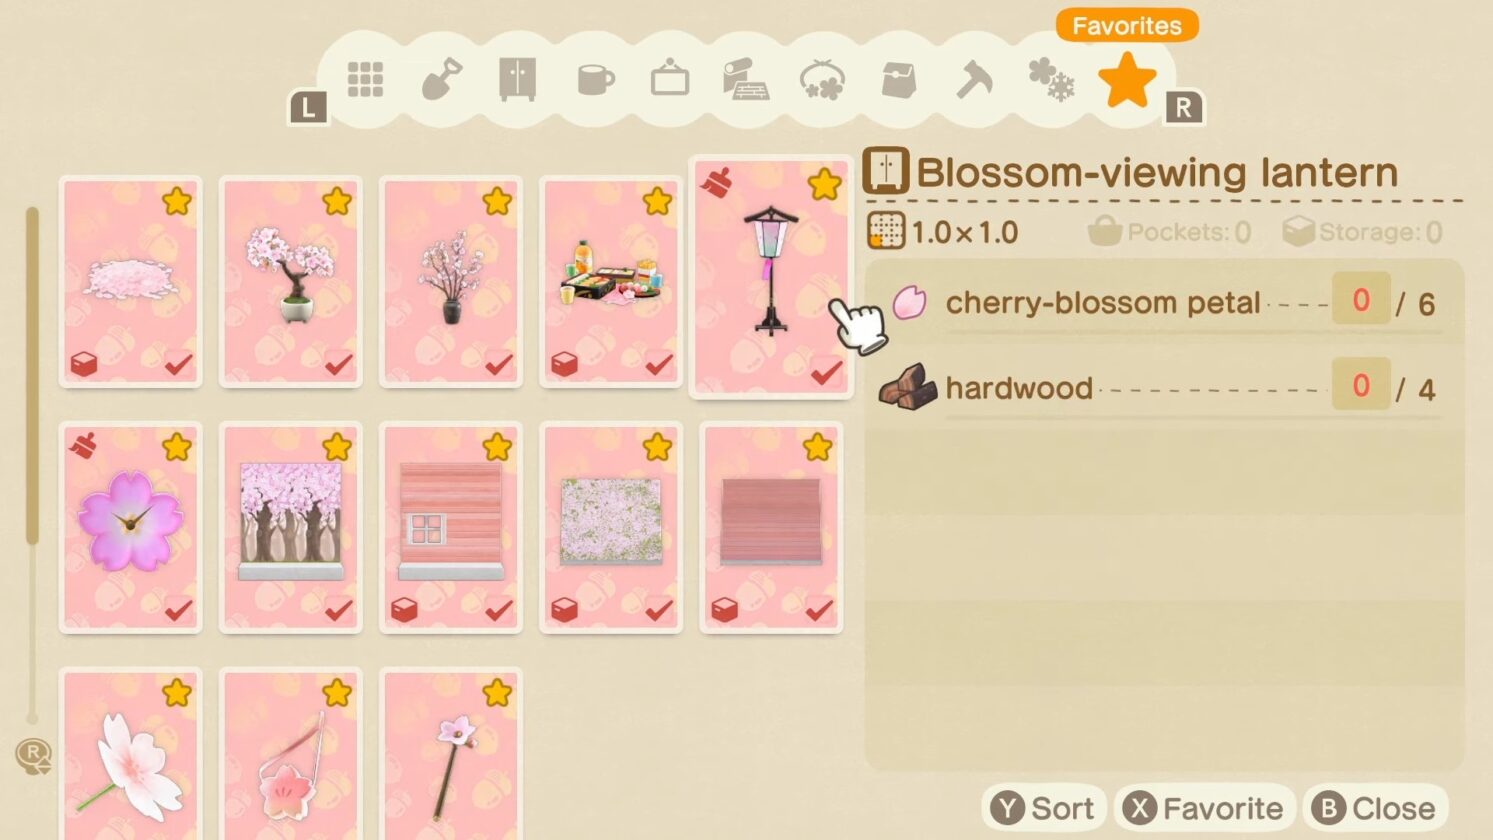 Ricetta fai-da-te con fiori di ciliegio in Animal Crossing New Horizons